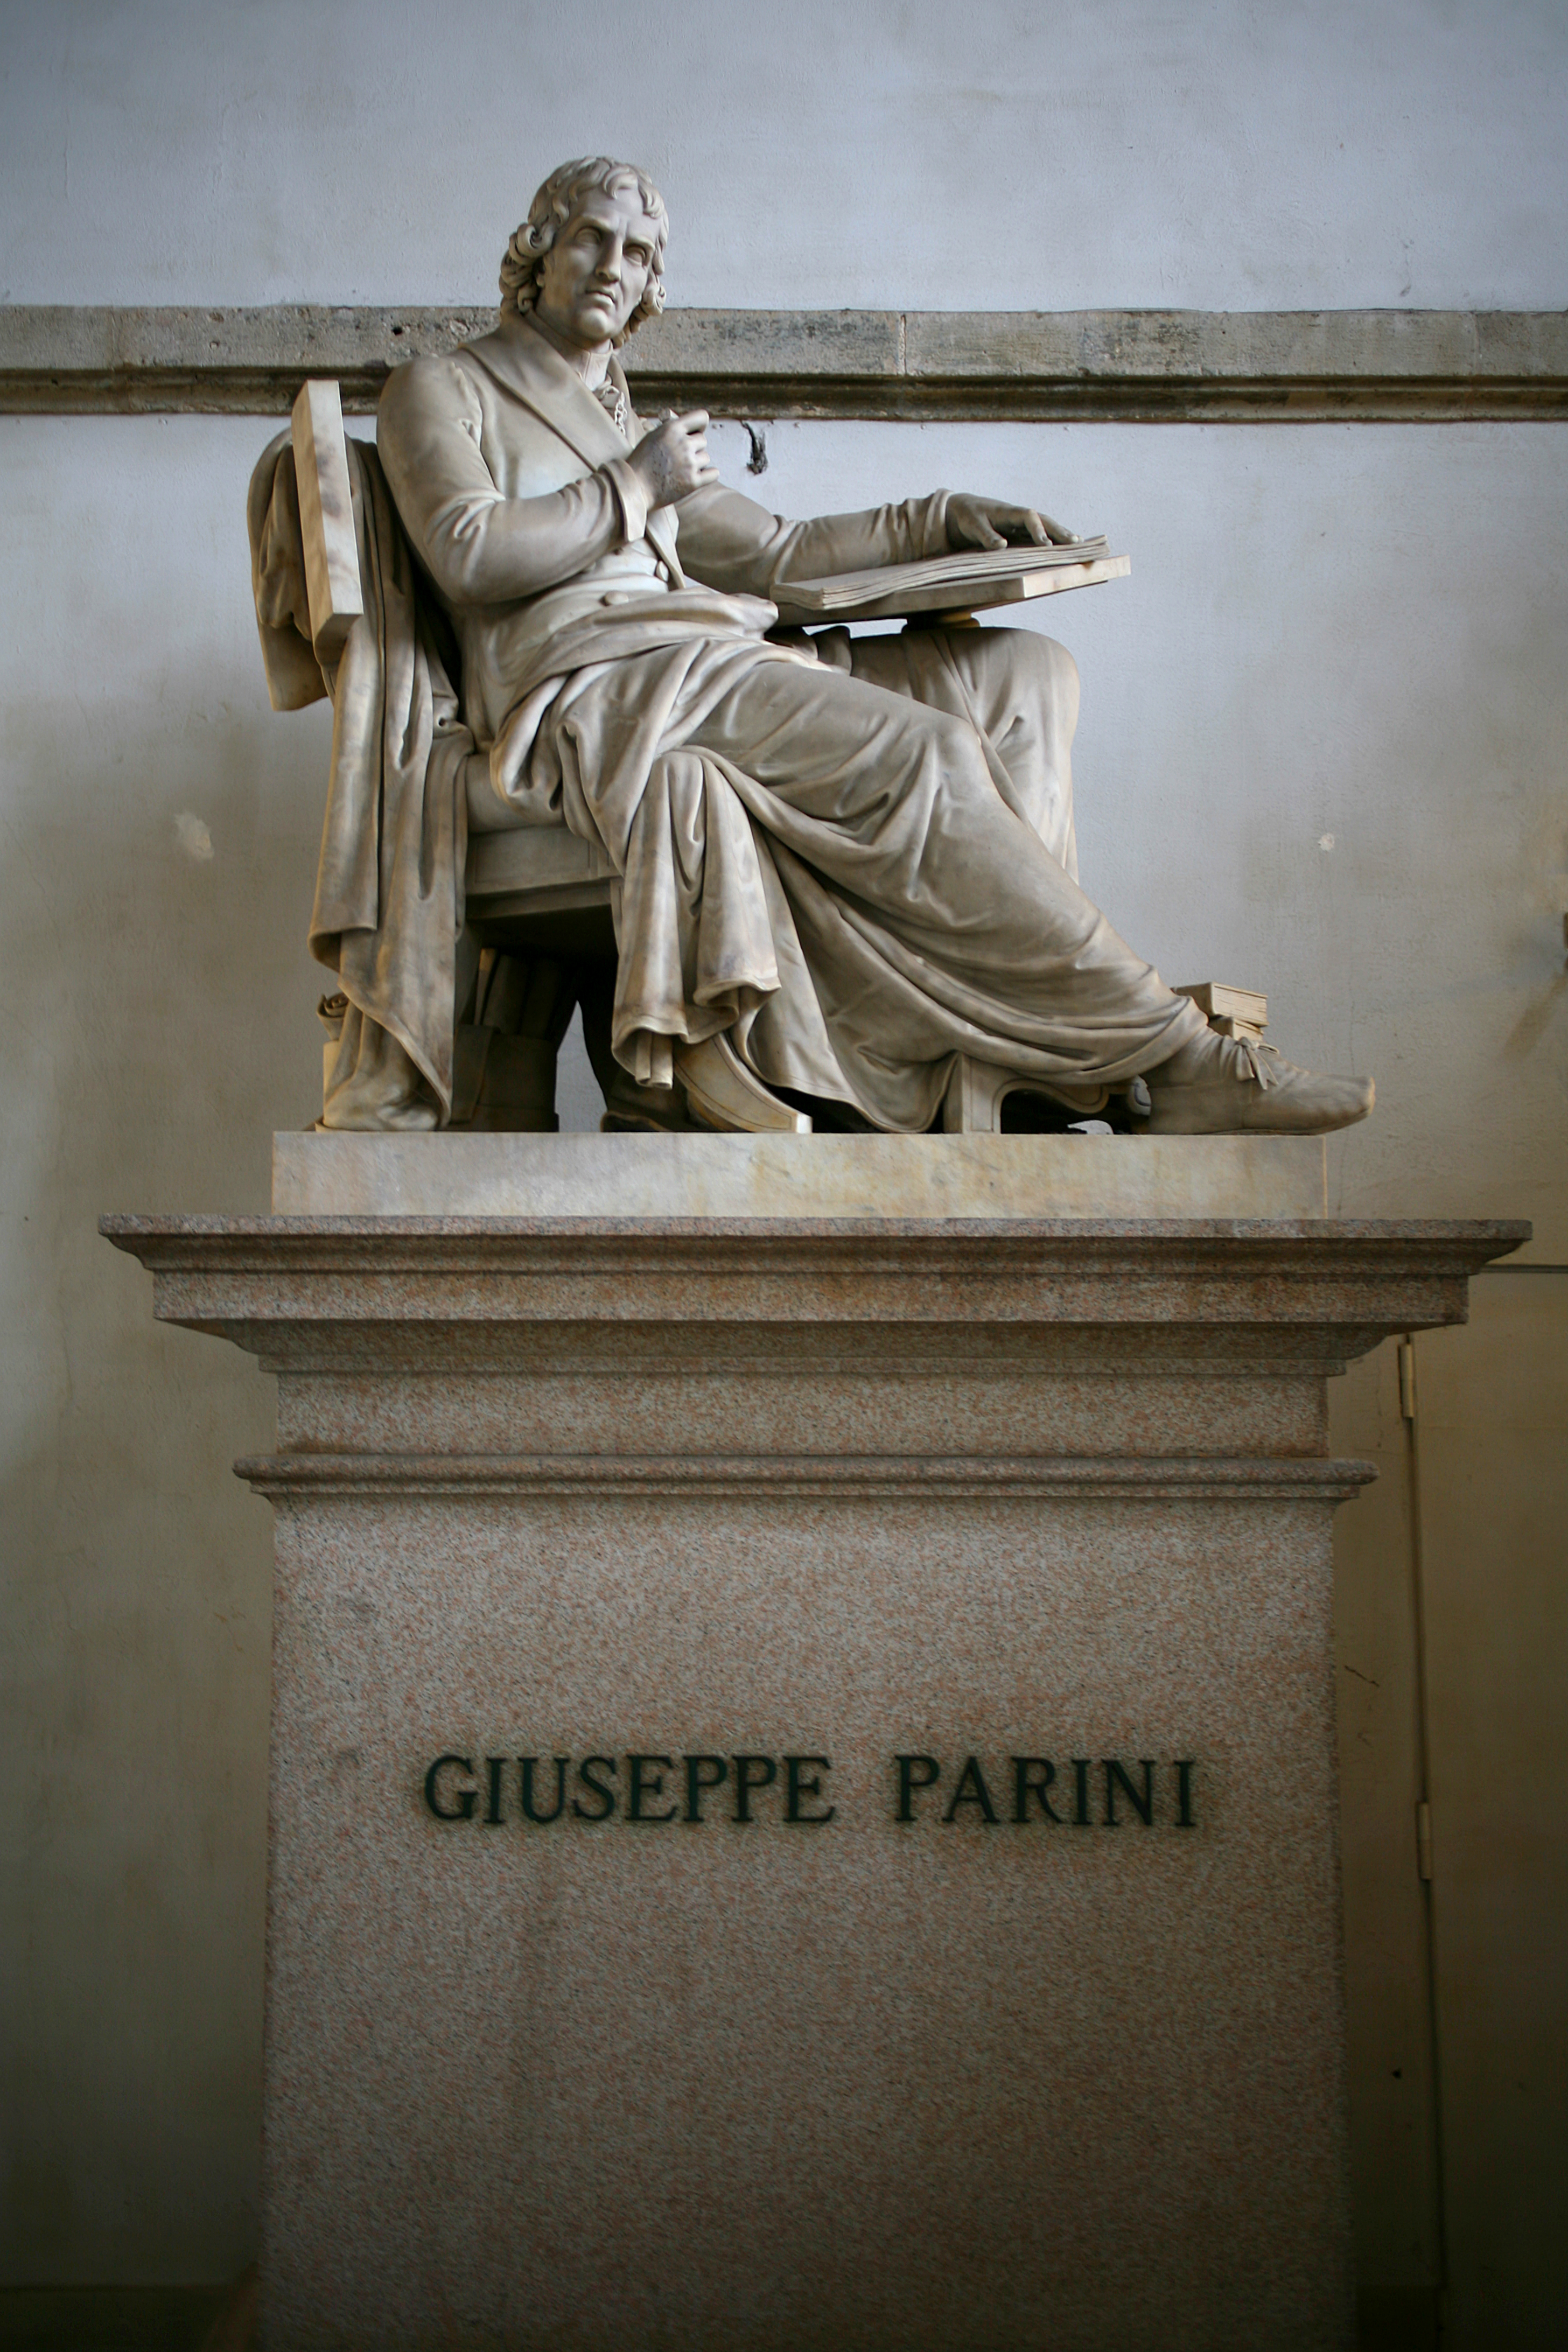 Gaetano_Matteo_Monti_(1776-1847)_Monumento_a_Giuseppe_Parini,_1838,_Milano.jpg